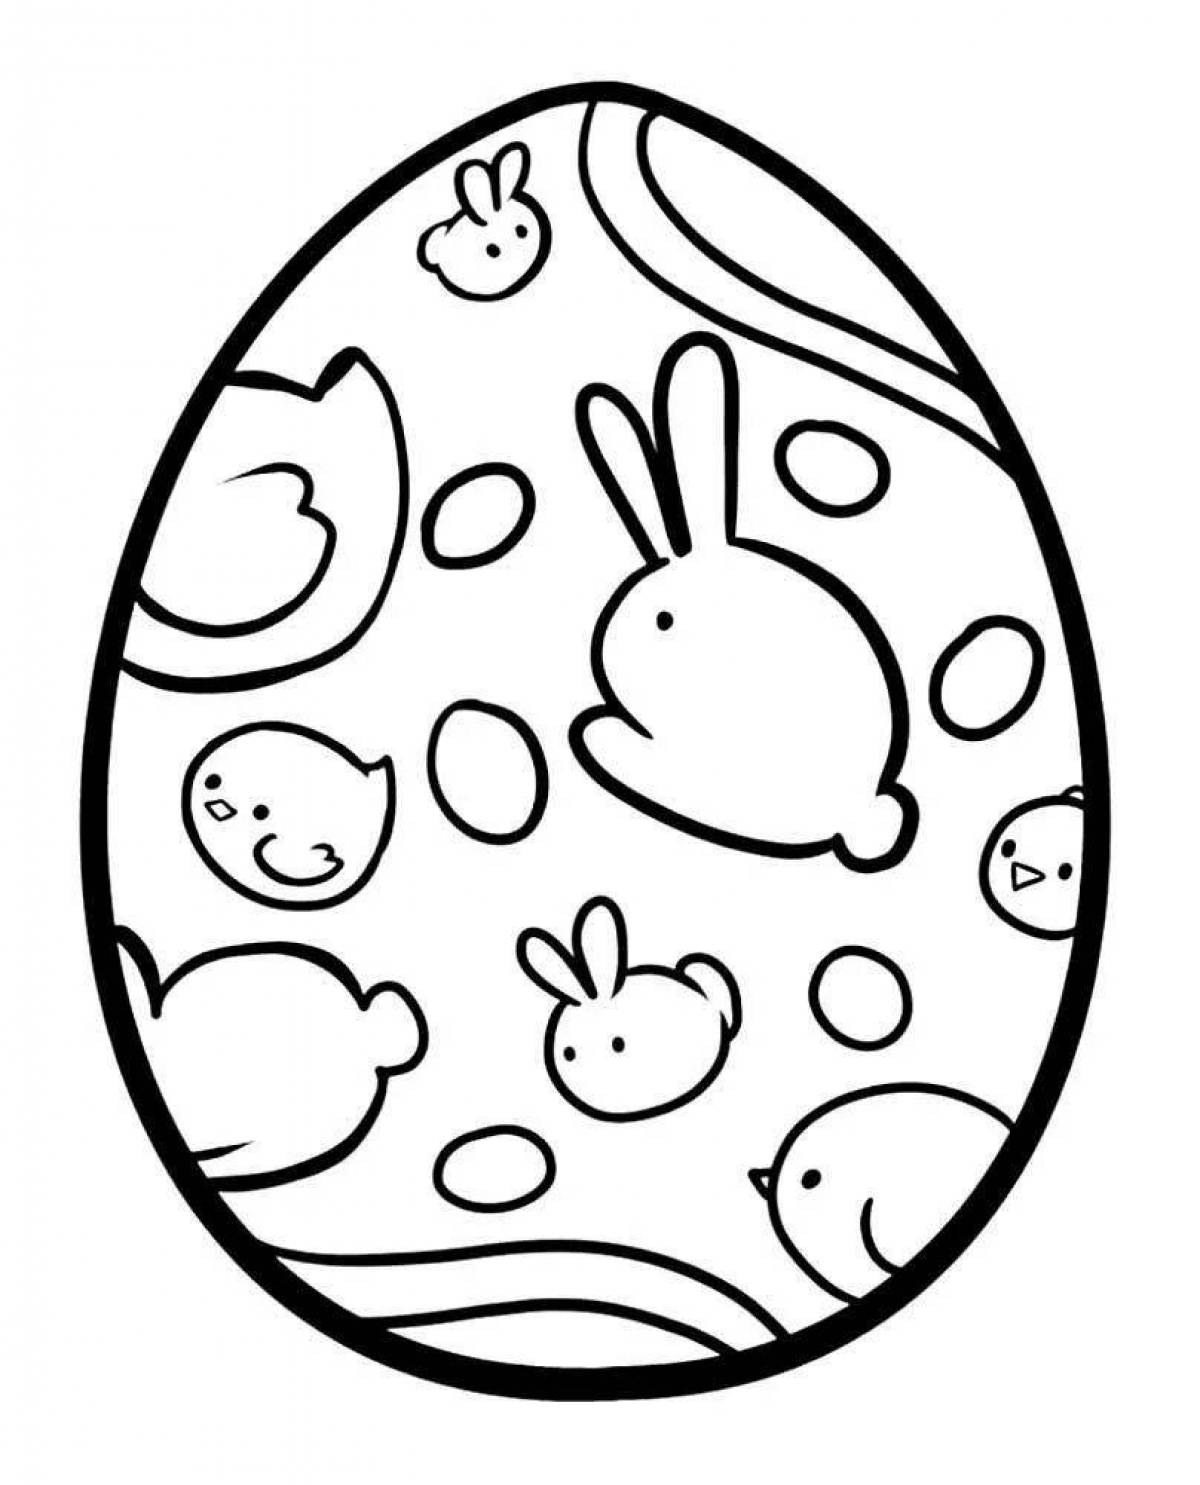 Пасхальное яйцо рисунок для детей. Пасхальное яйцо раскраска. Пасхальное яичко раскраска. Трафареты пасхальных яиц для раскрашивания. Раскраски пасхальные для детей.